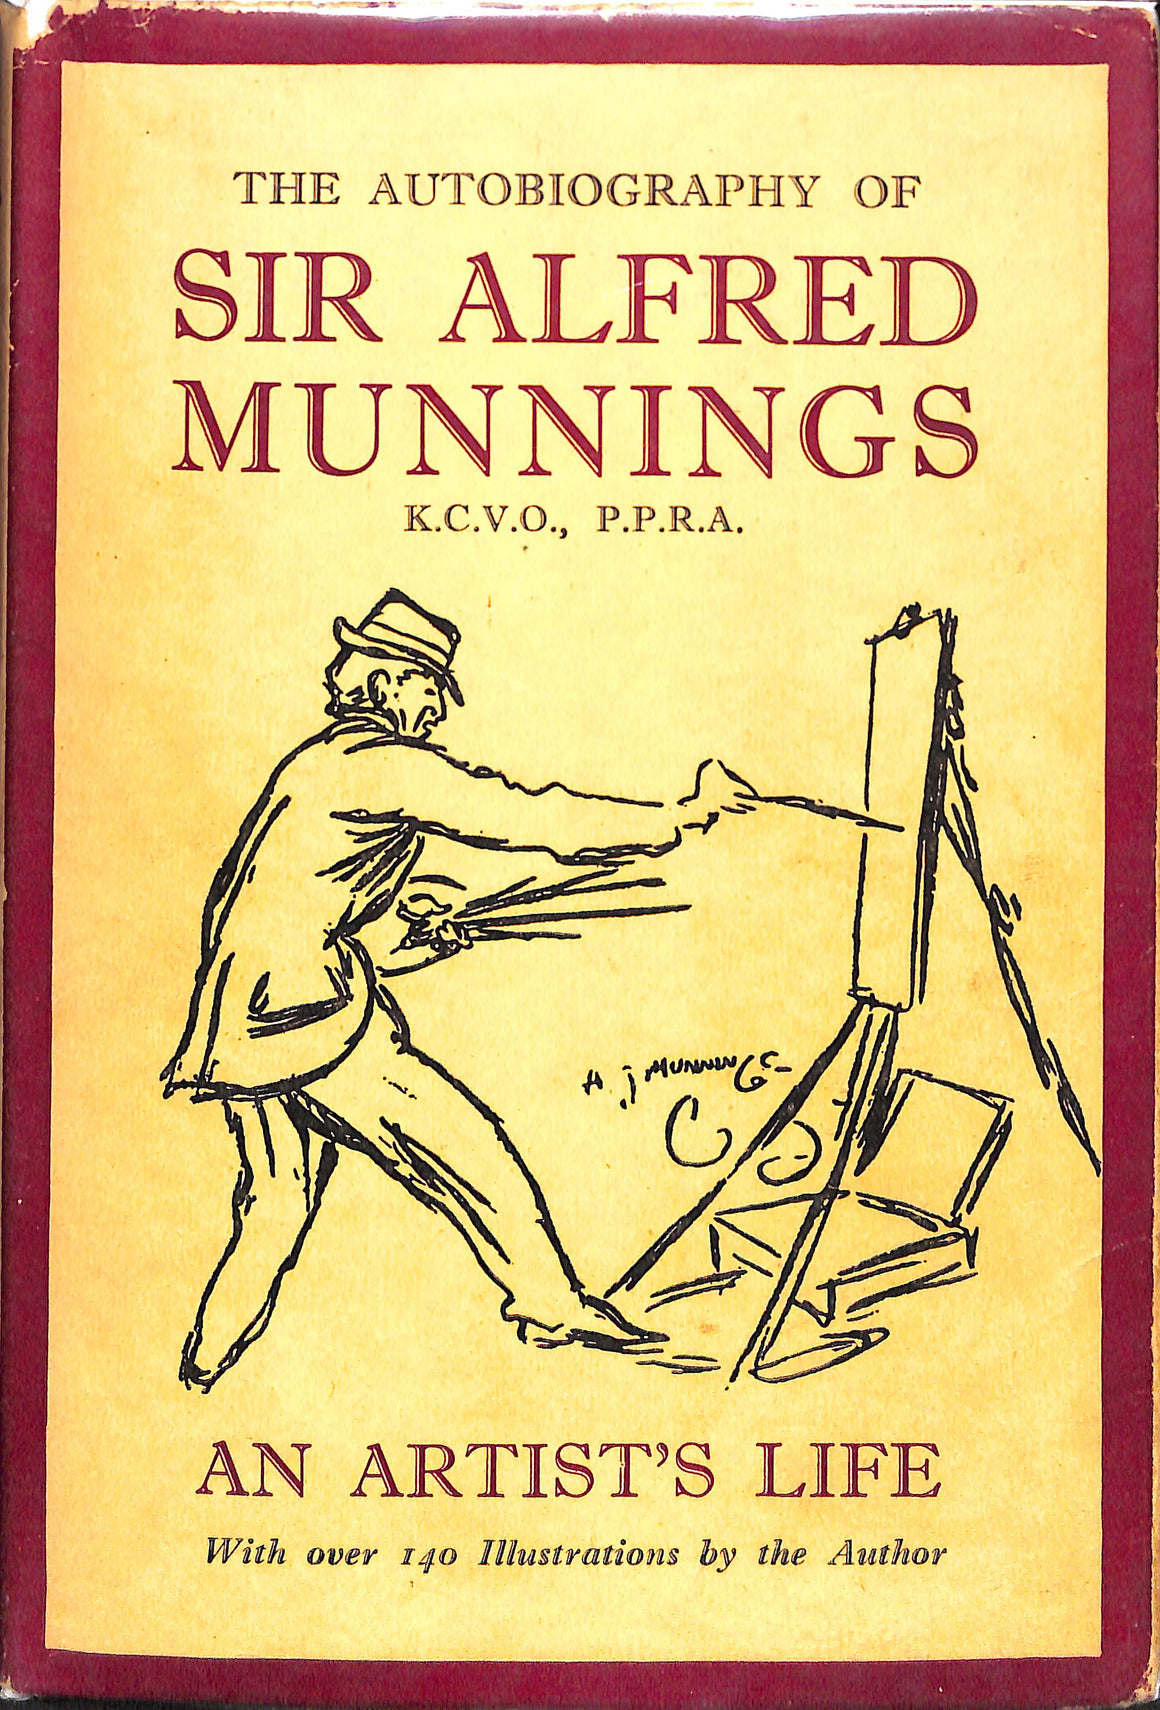 "An Artist's Life" 1950 MUNNINGS, Sir Alfred